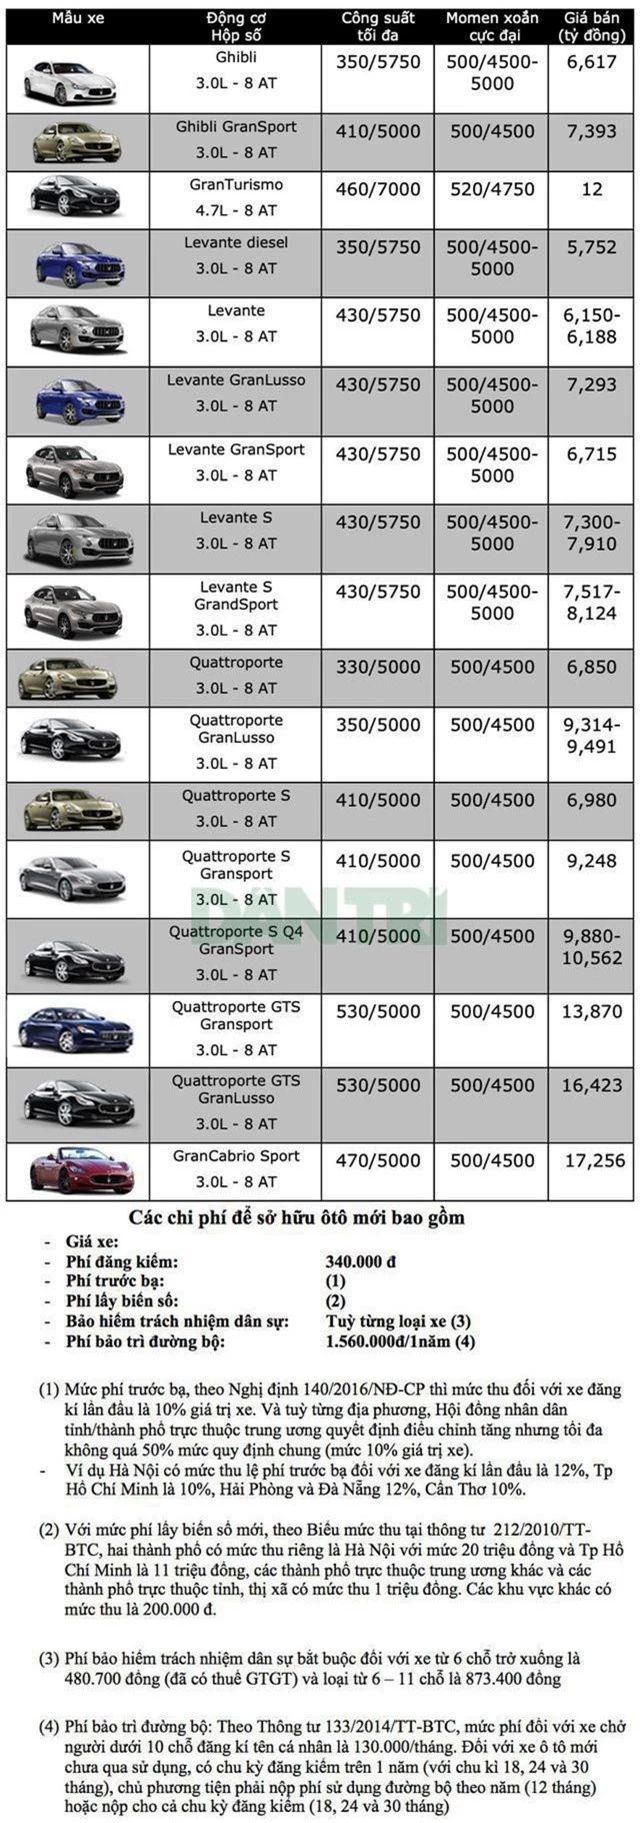 Bảng giá Maserati tại Việt Nam cập nhật tháng 6/2019 - 1